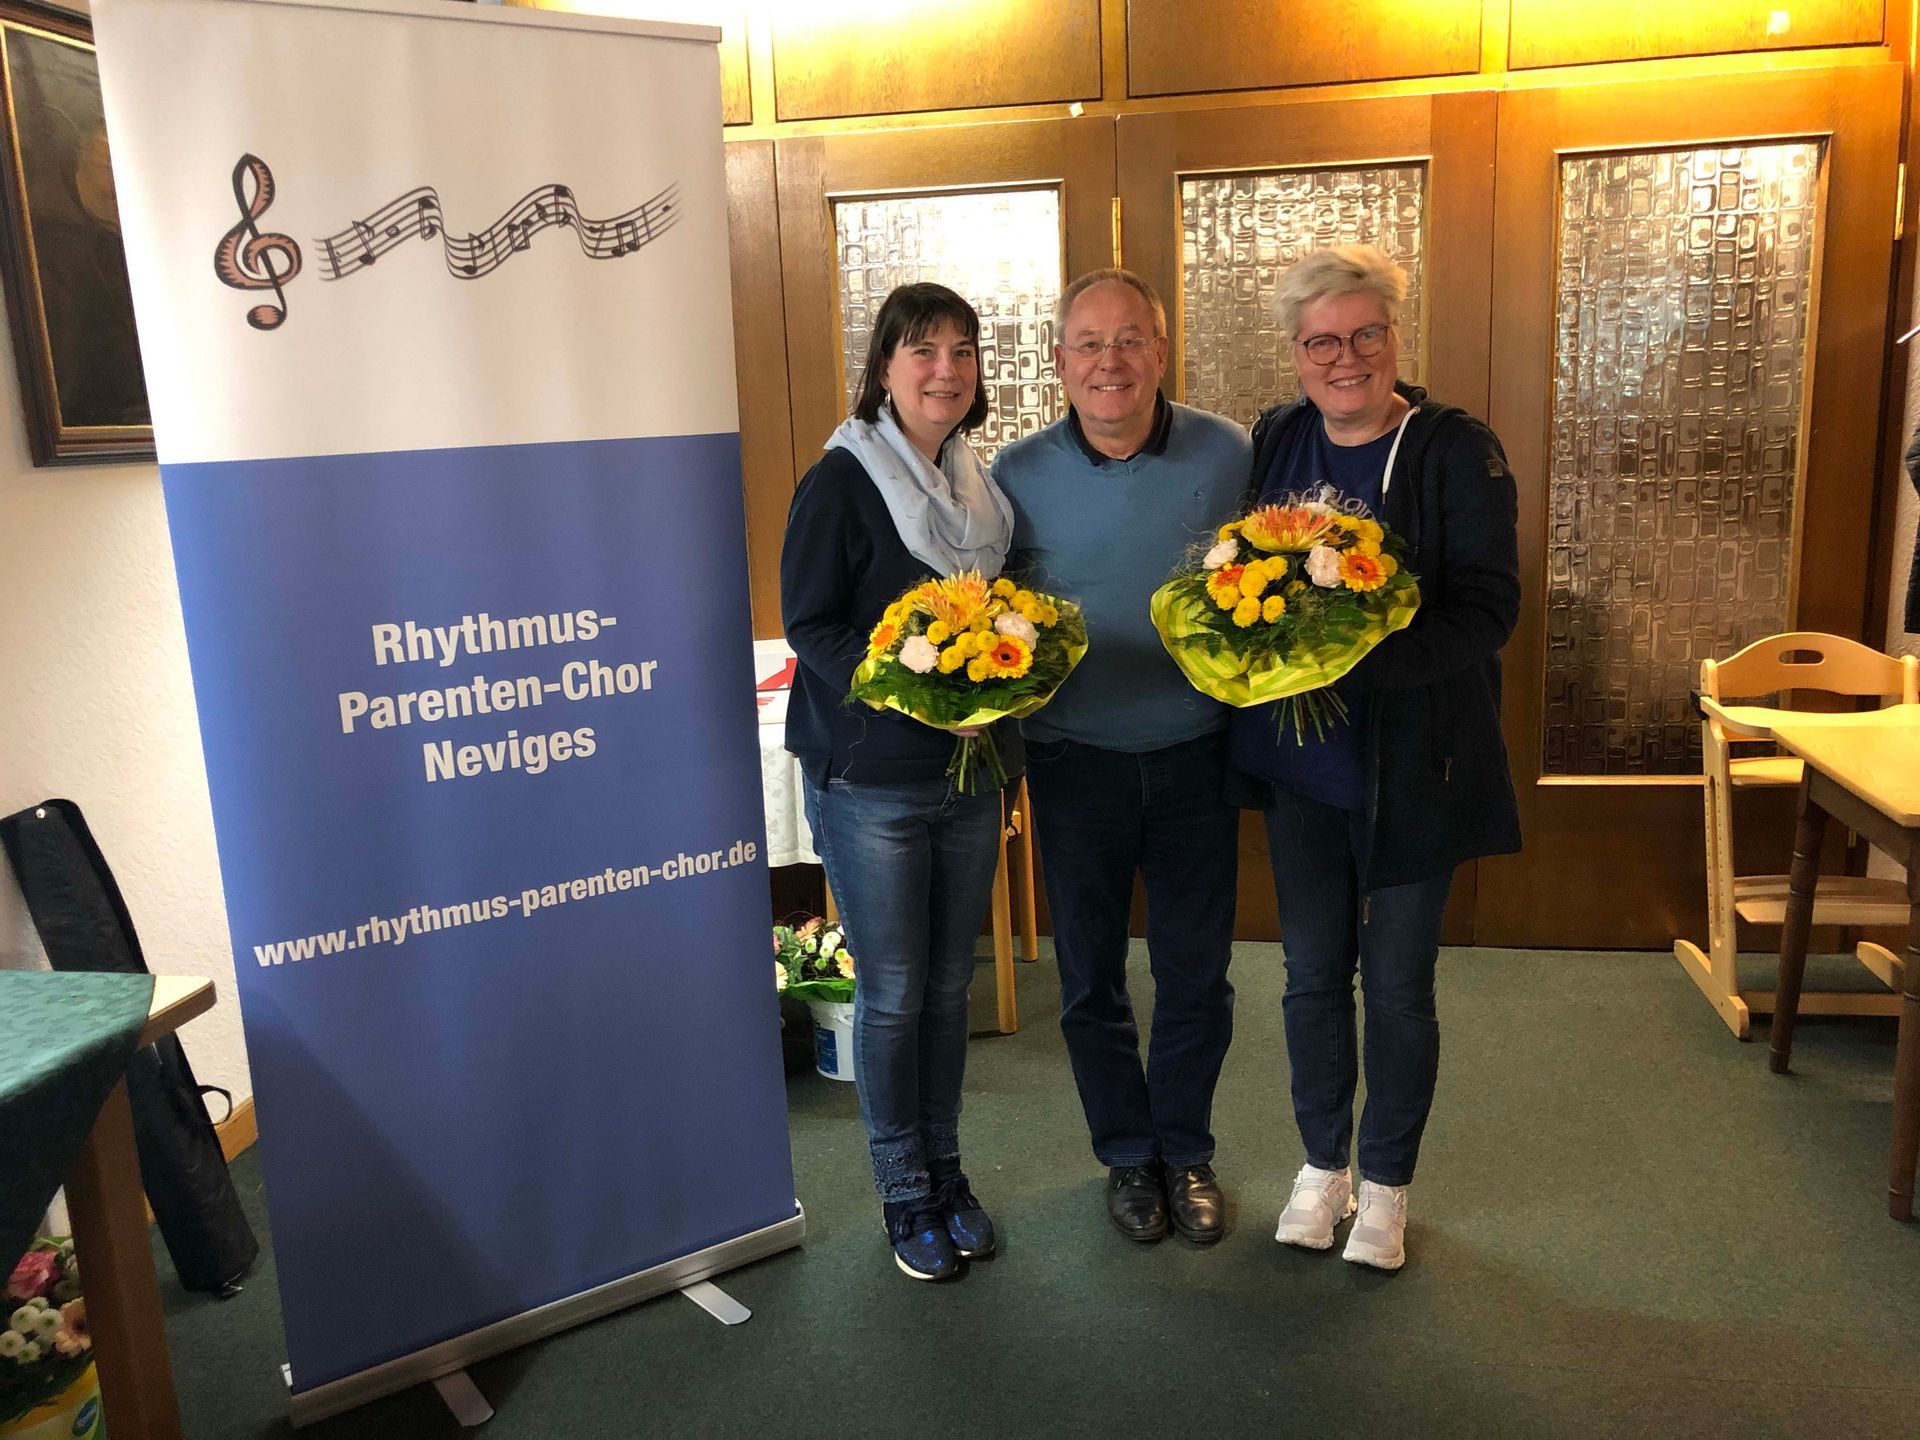 Vorstand: Detlev Riller mit der scheidenden 2. Vorsitzenden Jutta Hagling und der neuen 2. Vorsitzenden Anja Zahlmann.
(v.l.n.r.)